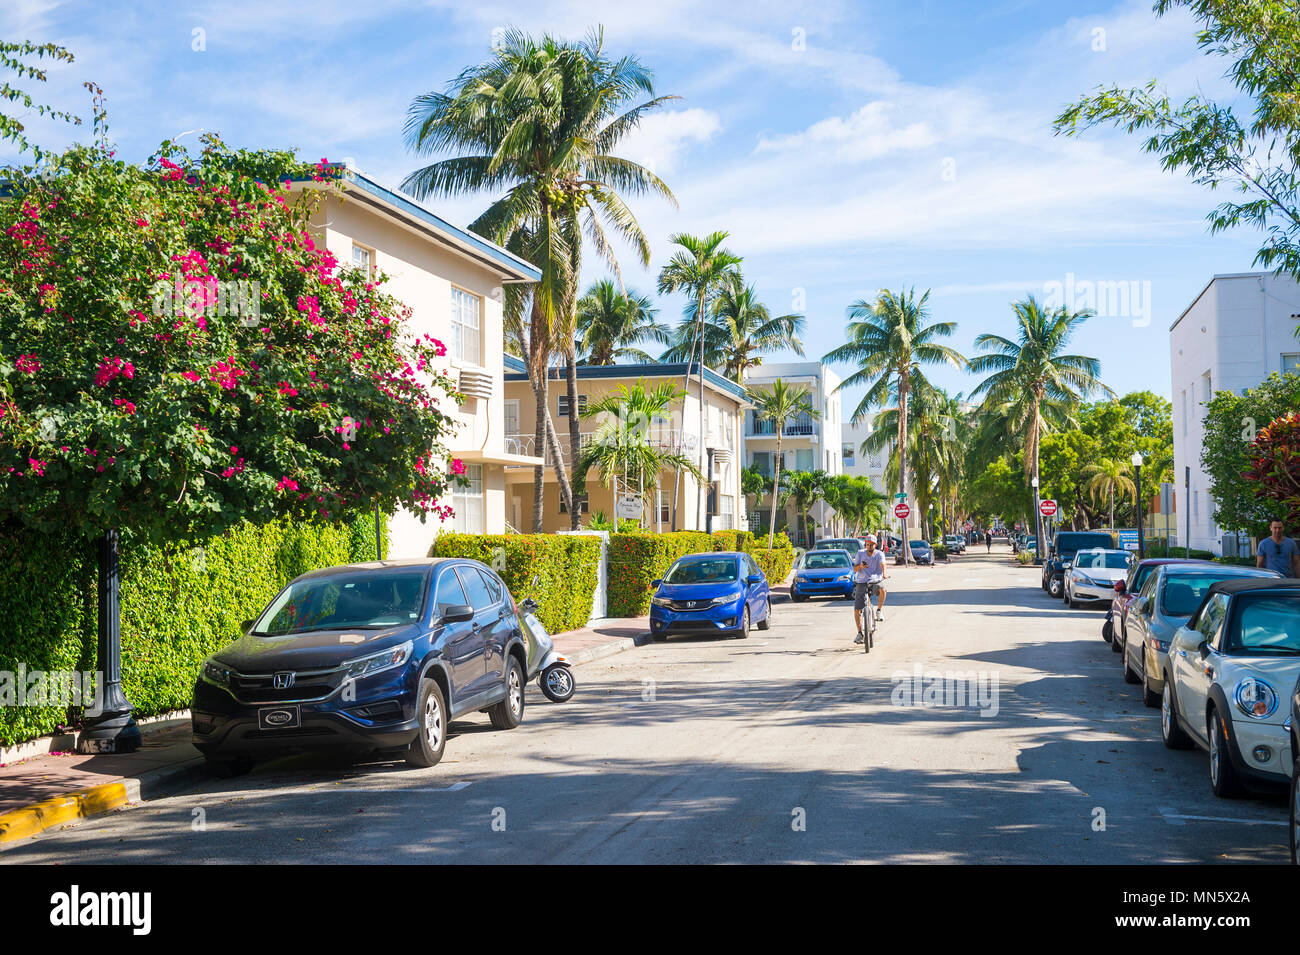 MIAMI - ca. Januar 2017: Radfahrer reiten auf einer ruhigen Wohnstraße mit Palmen und blühenden Sträuchern im historischen Art déco-Viertel Stockfoto